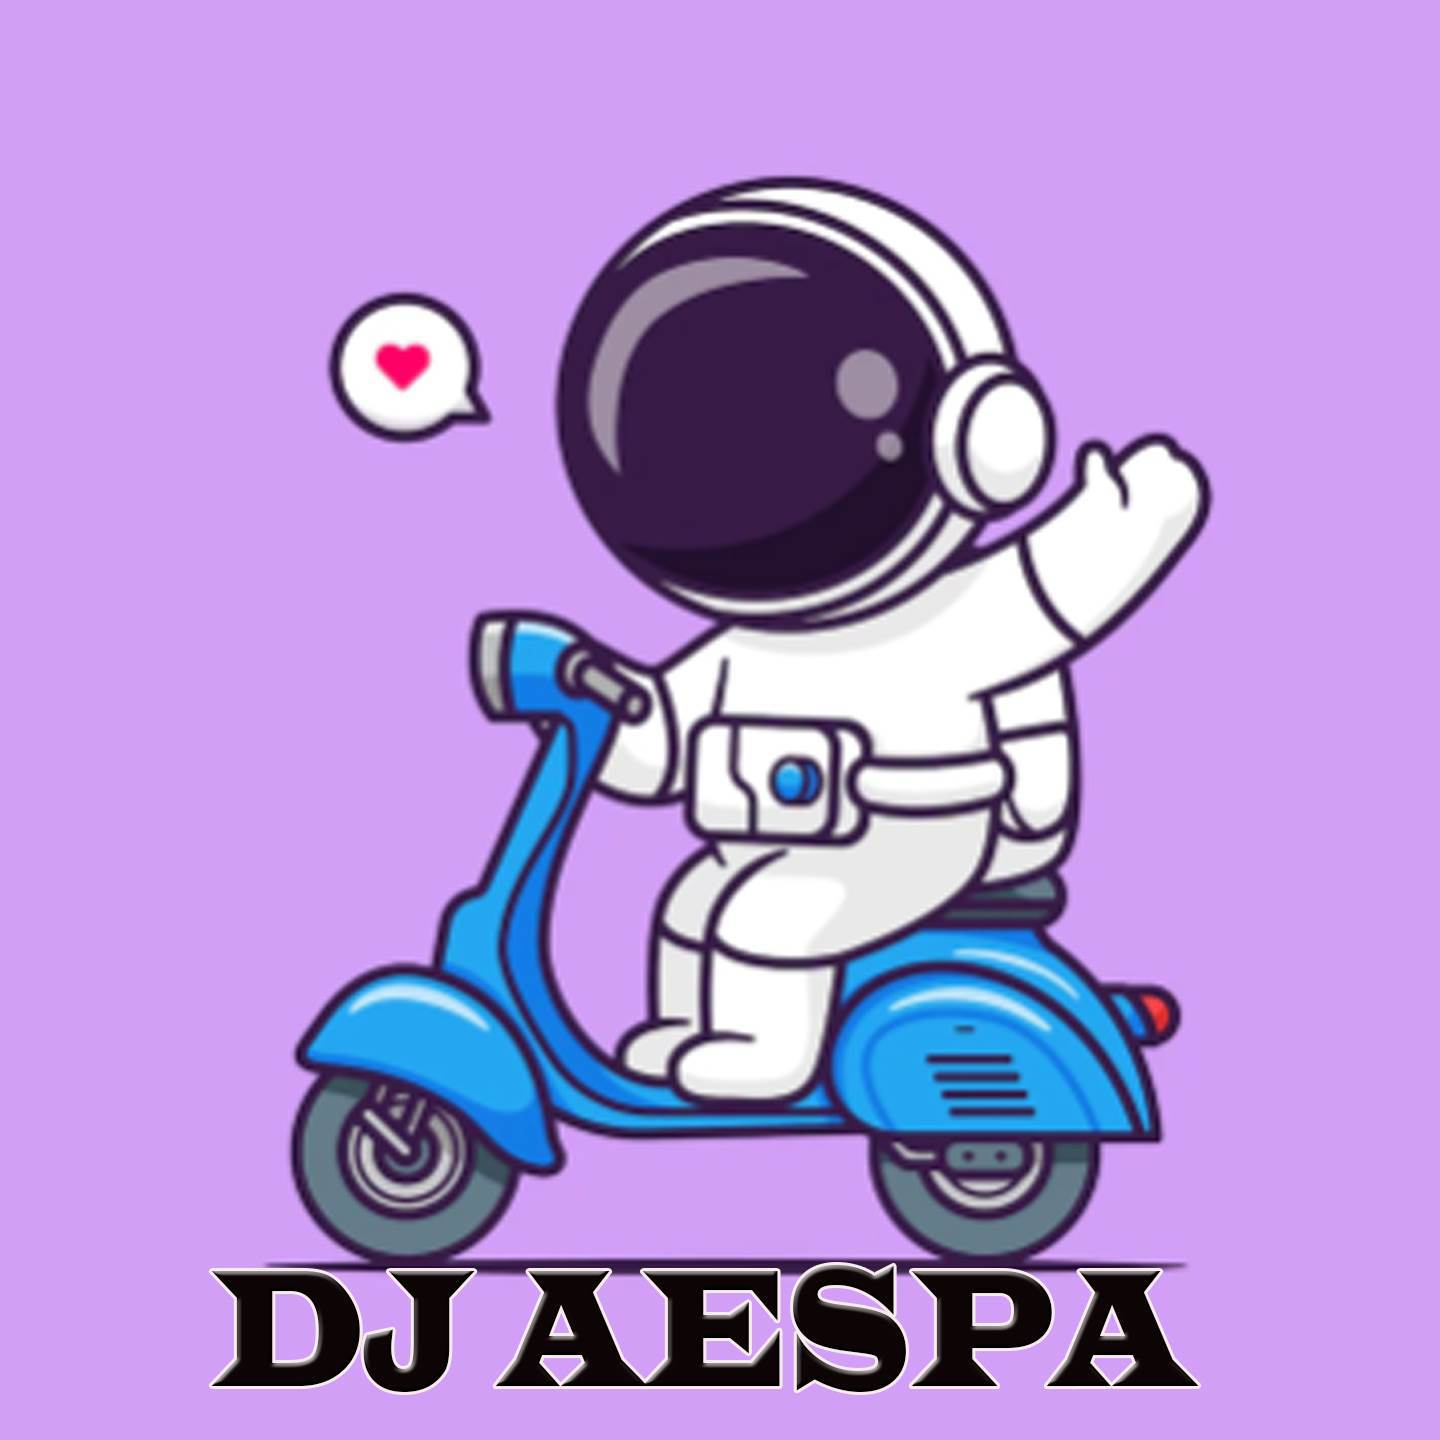 DJ AESPA - dj you broke me first X bangku sayang